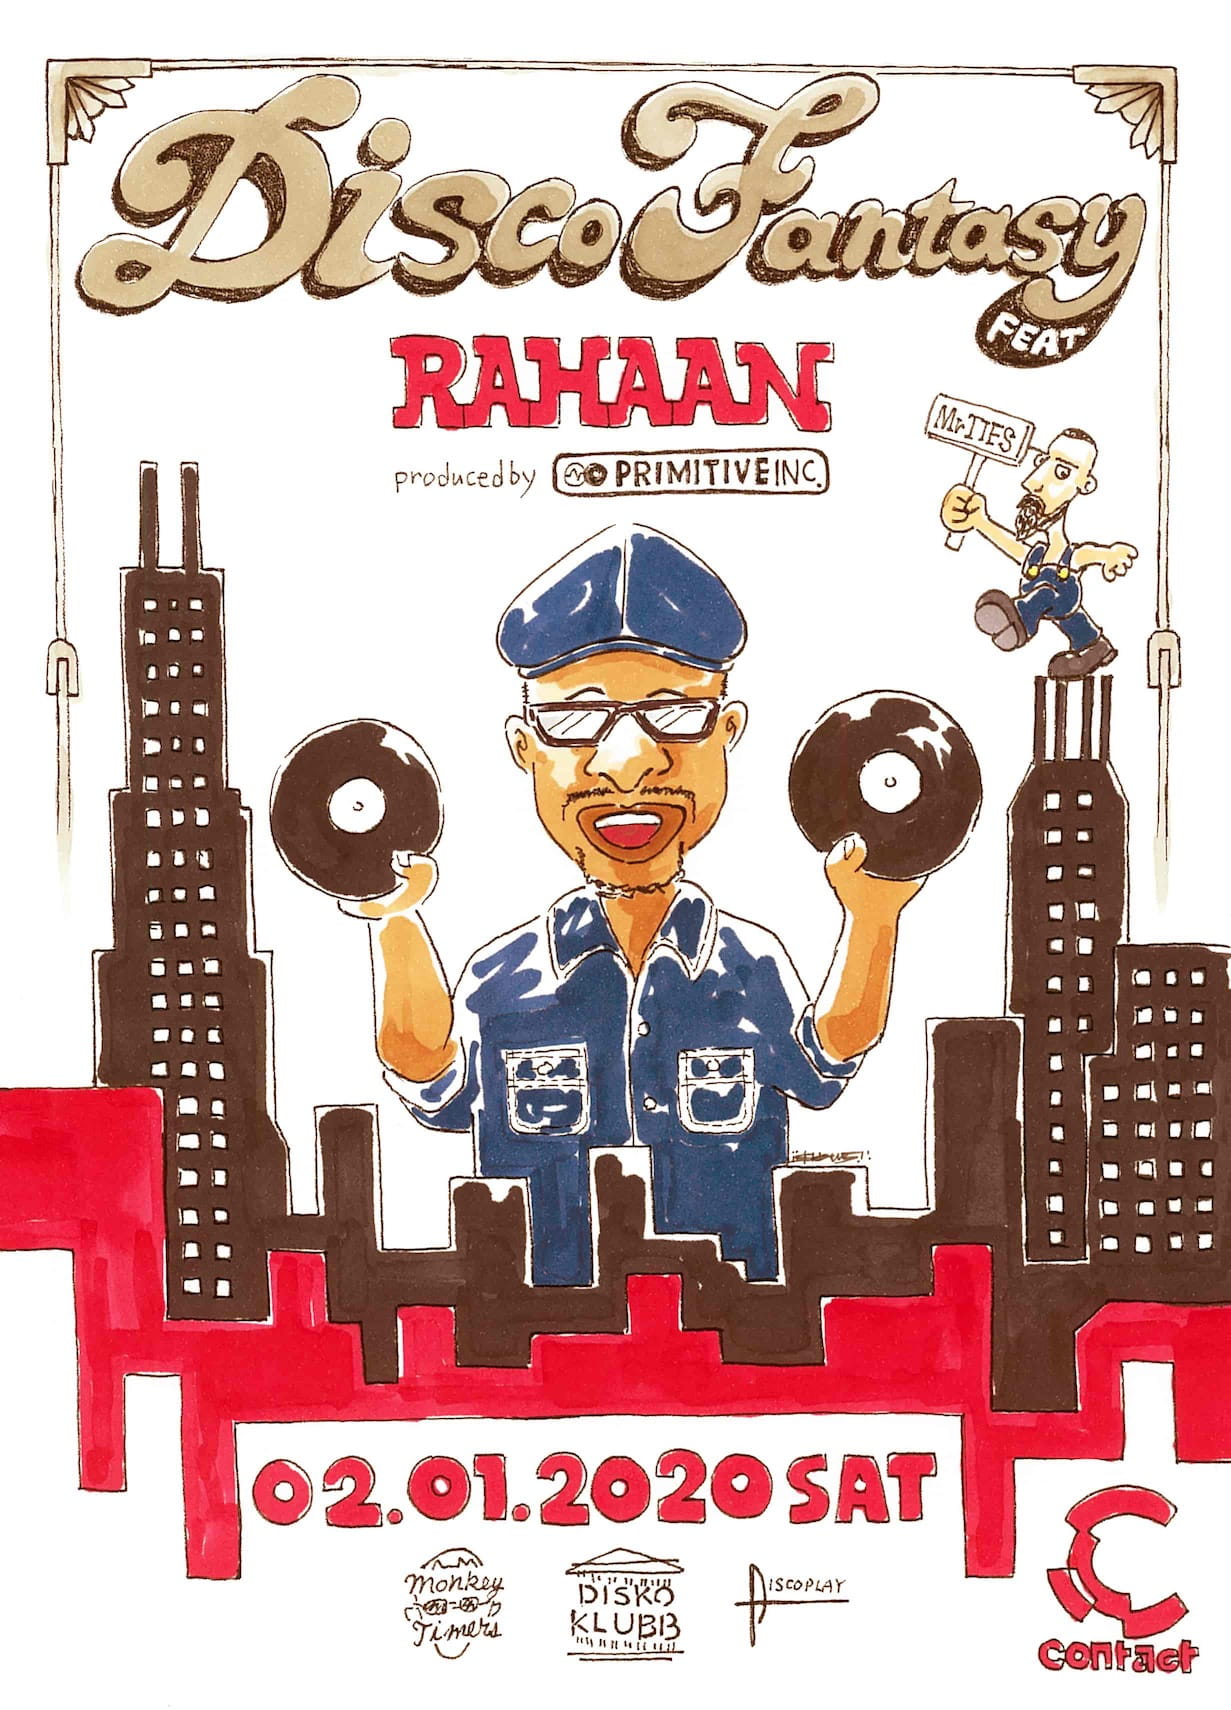 Rahaan Japan tour: DISCO FANTASY feat. Rahaan